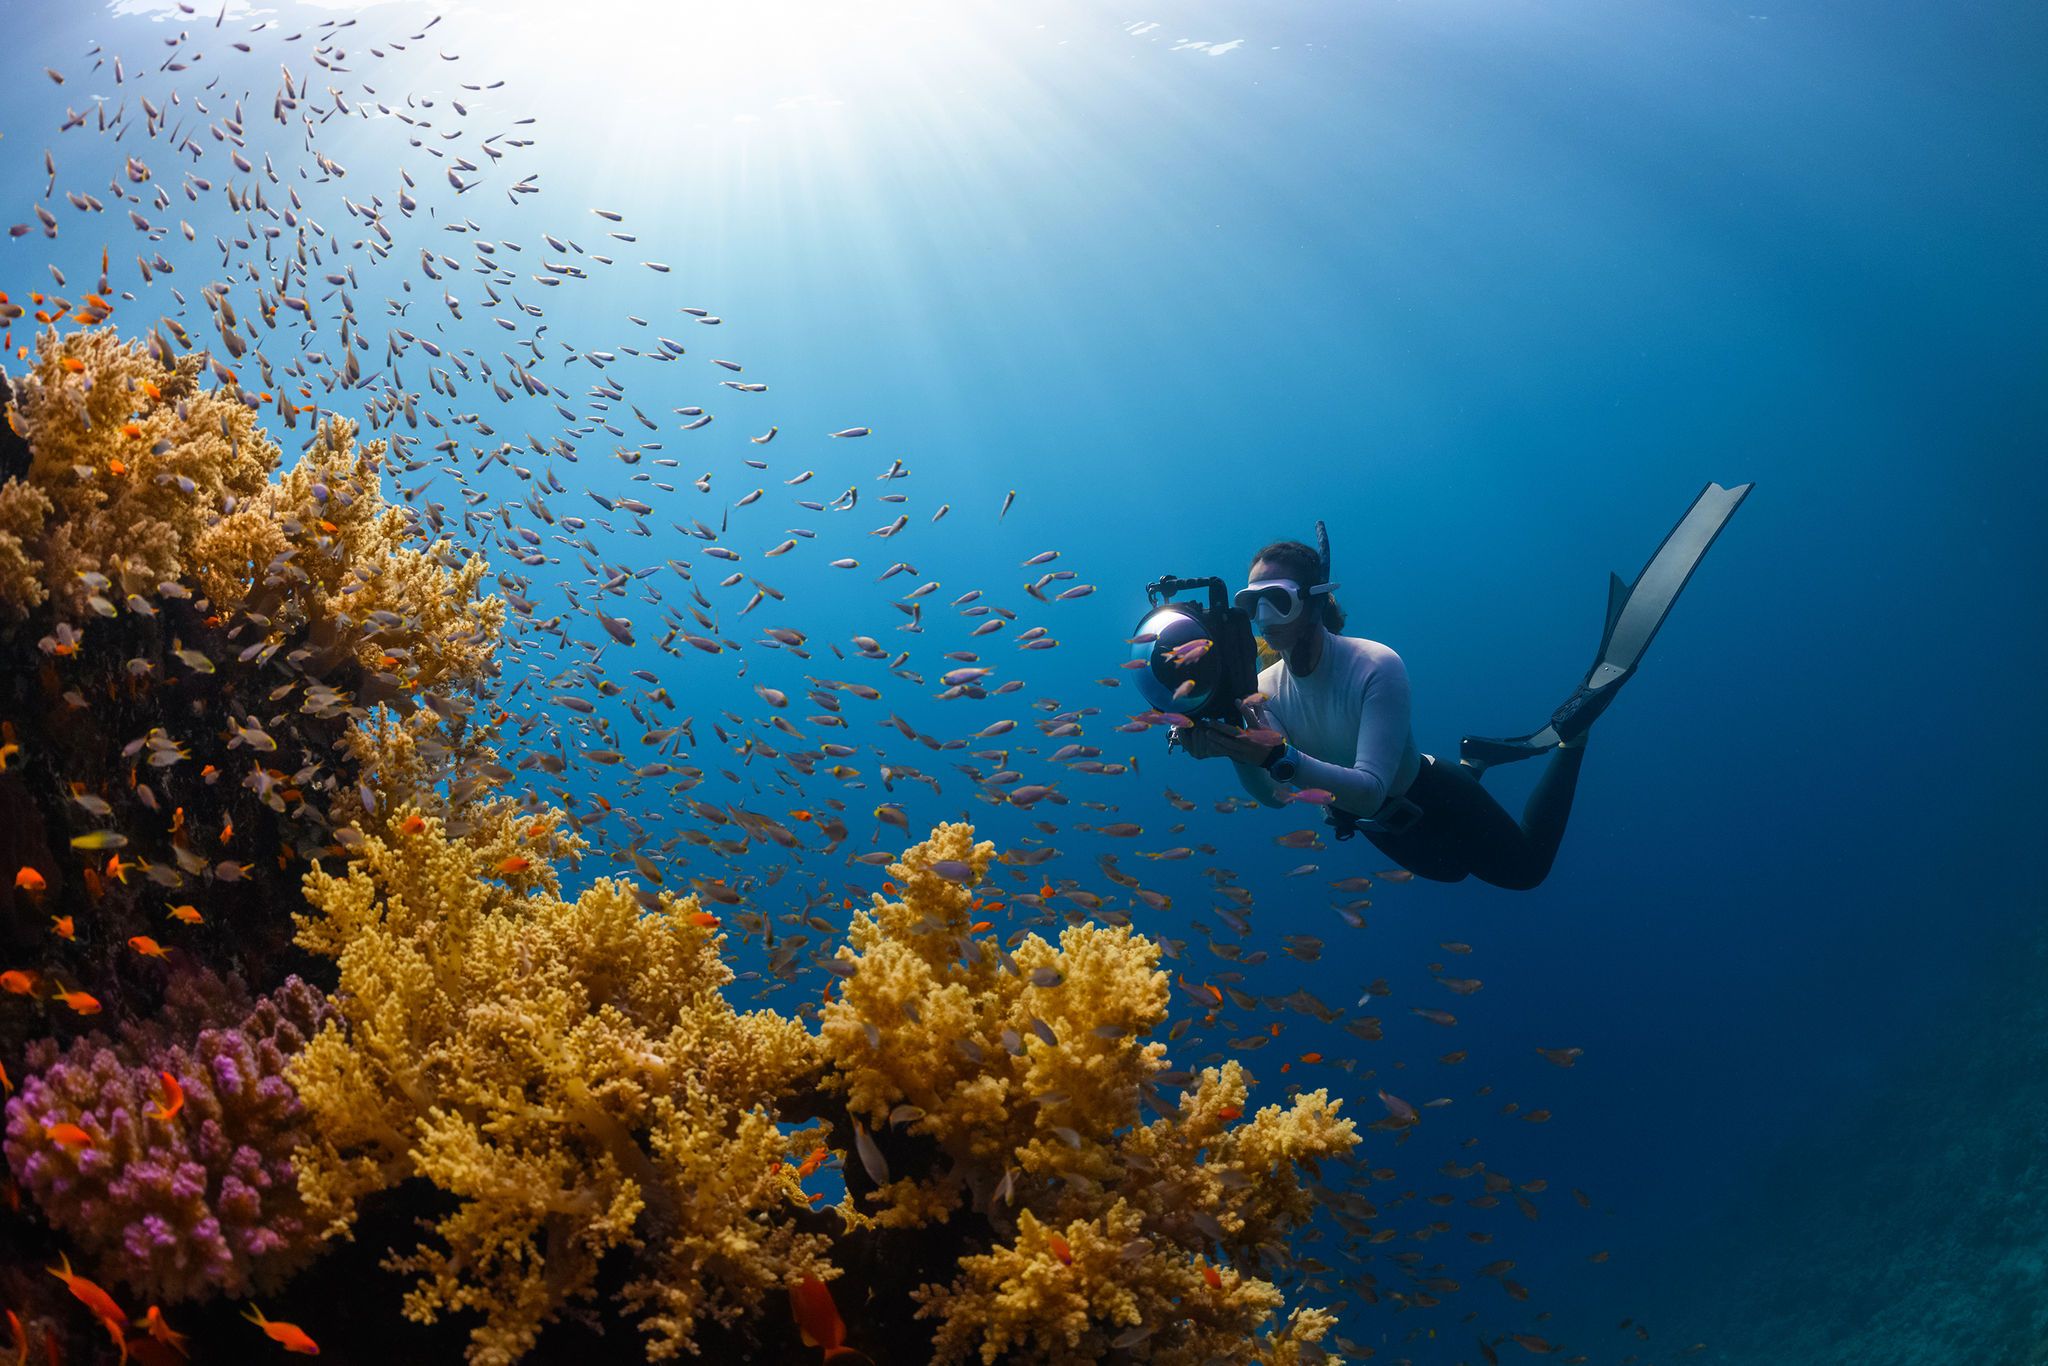 استكشاف العالم تحت الماء مع تجارب مائية وغوص متميزة في سندالة